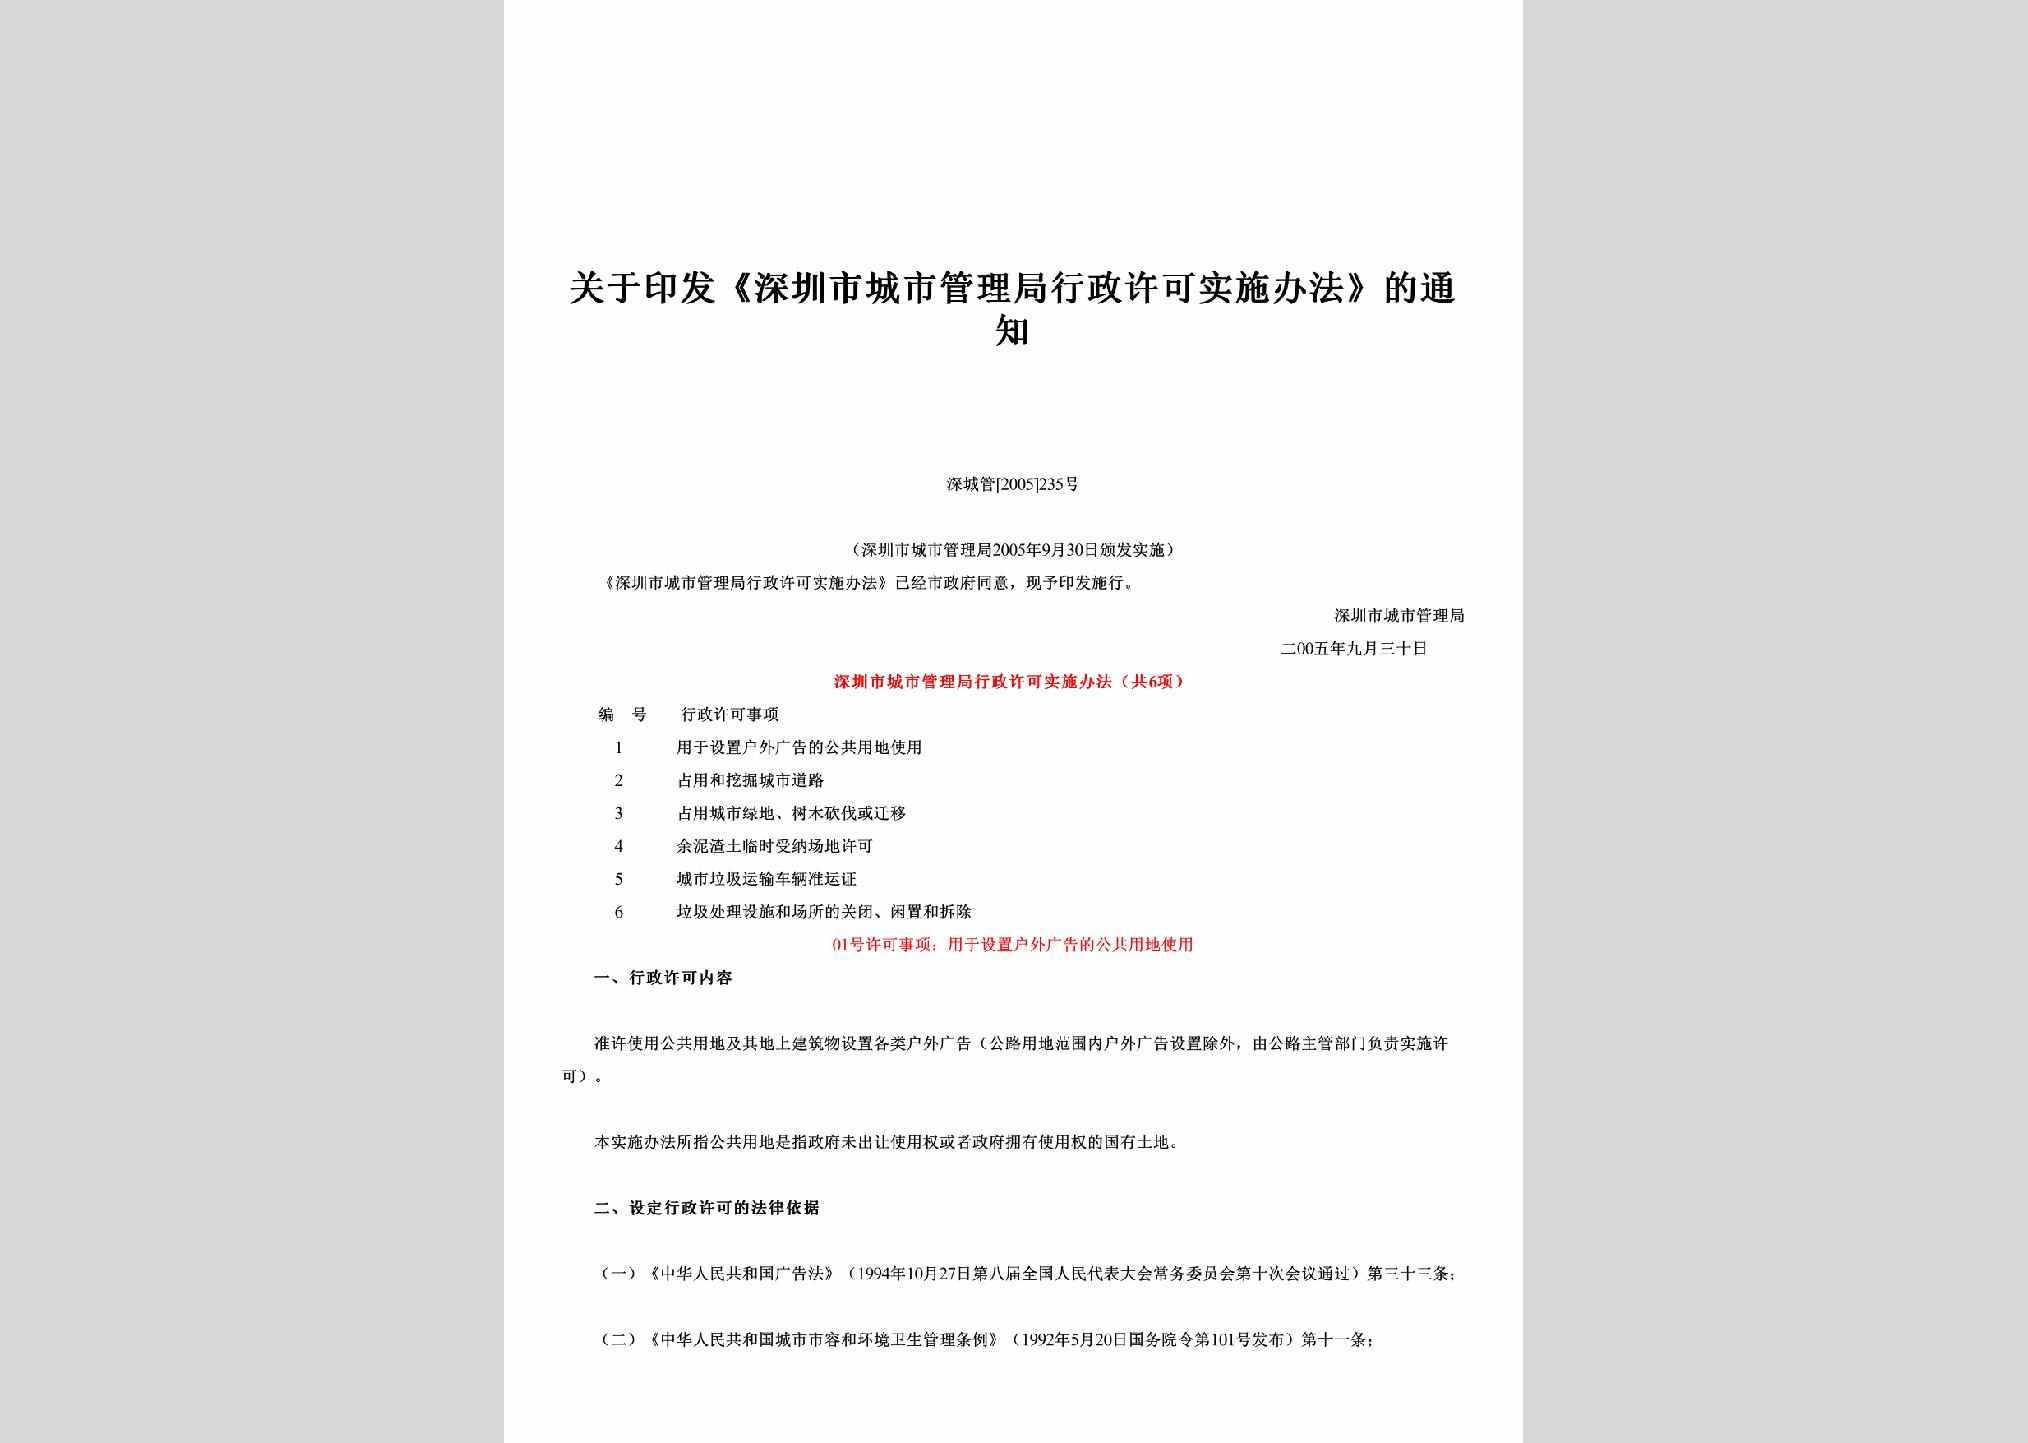 深城管[2005]235号：关于印发《深圳市城市管理局行政许可实施办法》的通知